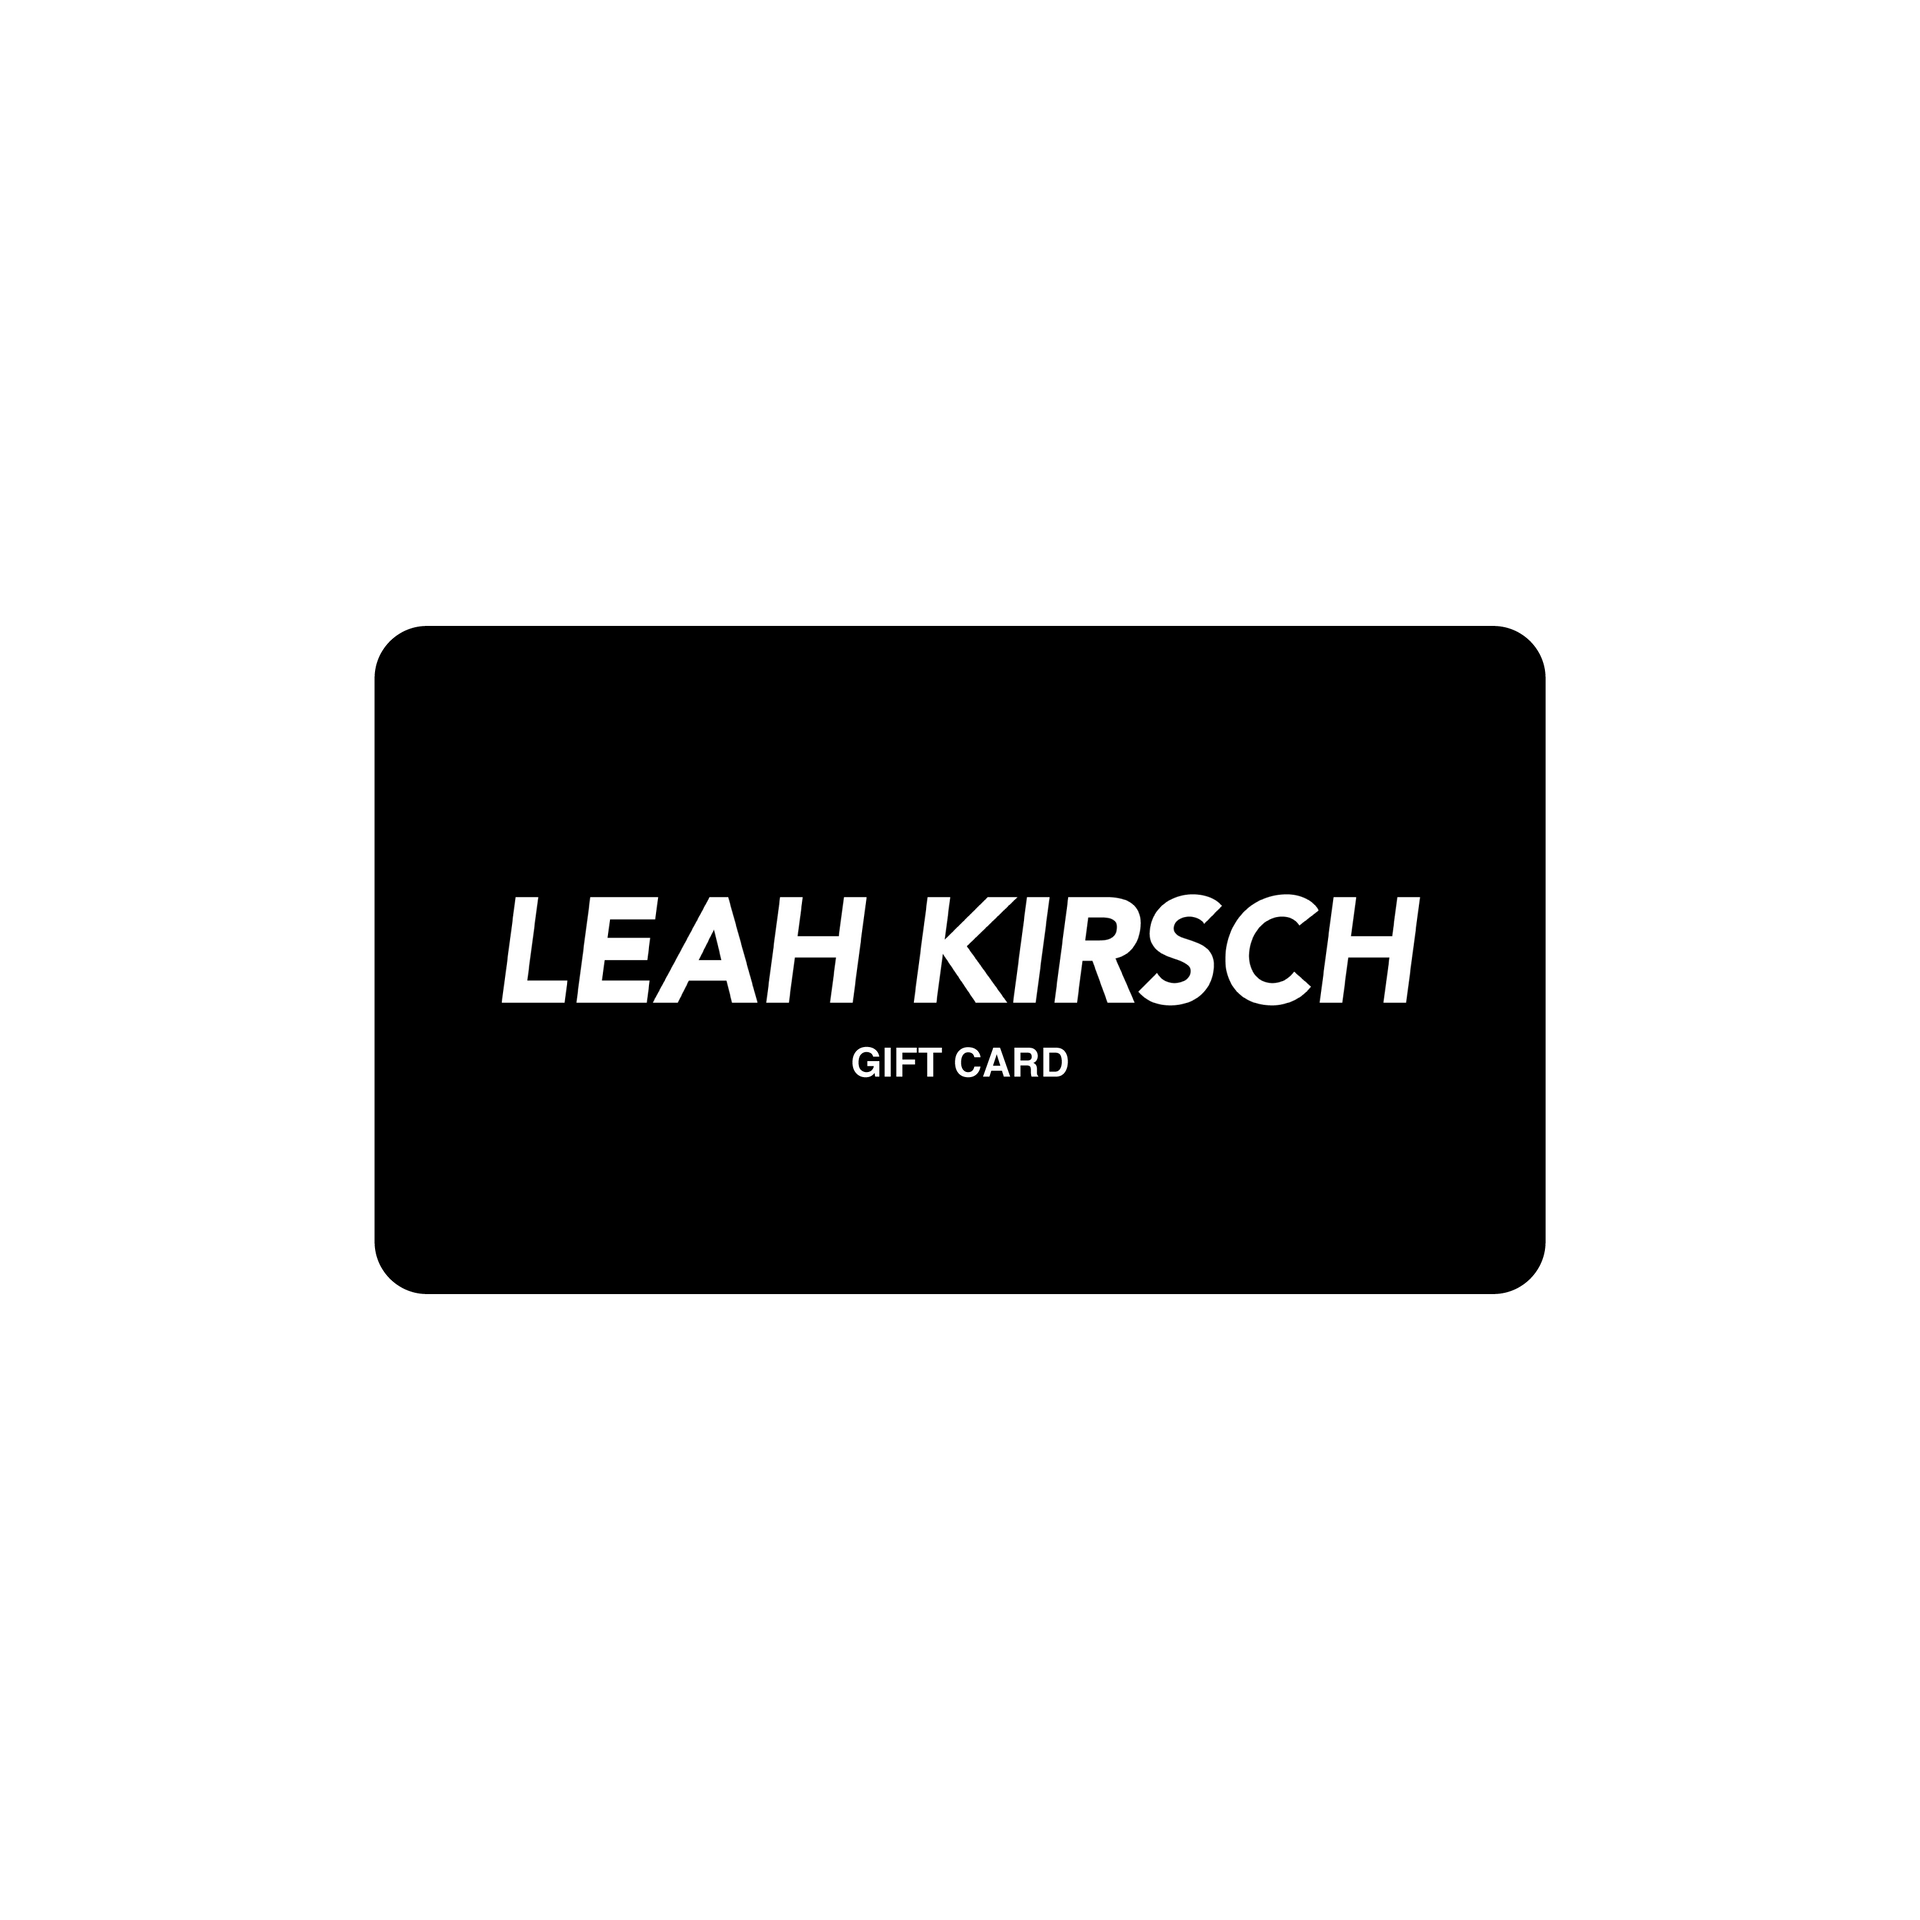 Leah Kirsch Gift Card